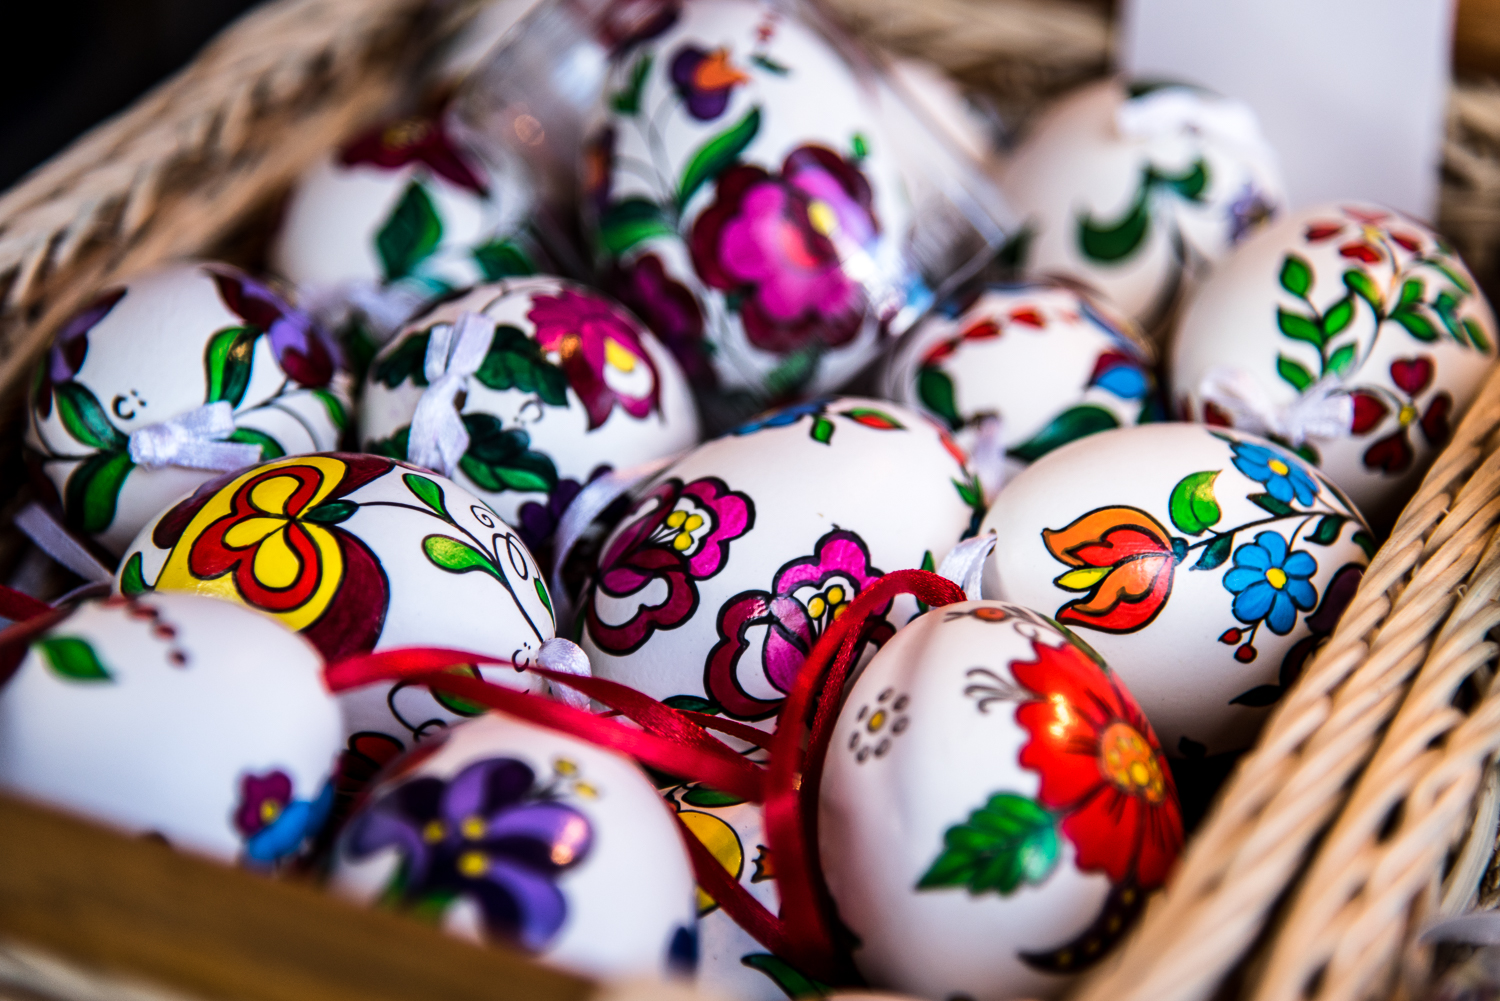 Franciás sült báránycsülök vagy magyaros kalácsos-tormás fogások – a Sofiteltől most házhoz jön az ötcsillagos húsvéti menü!